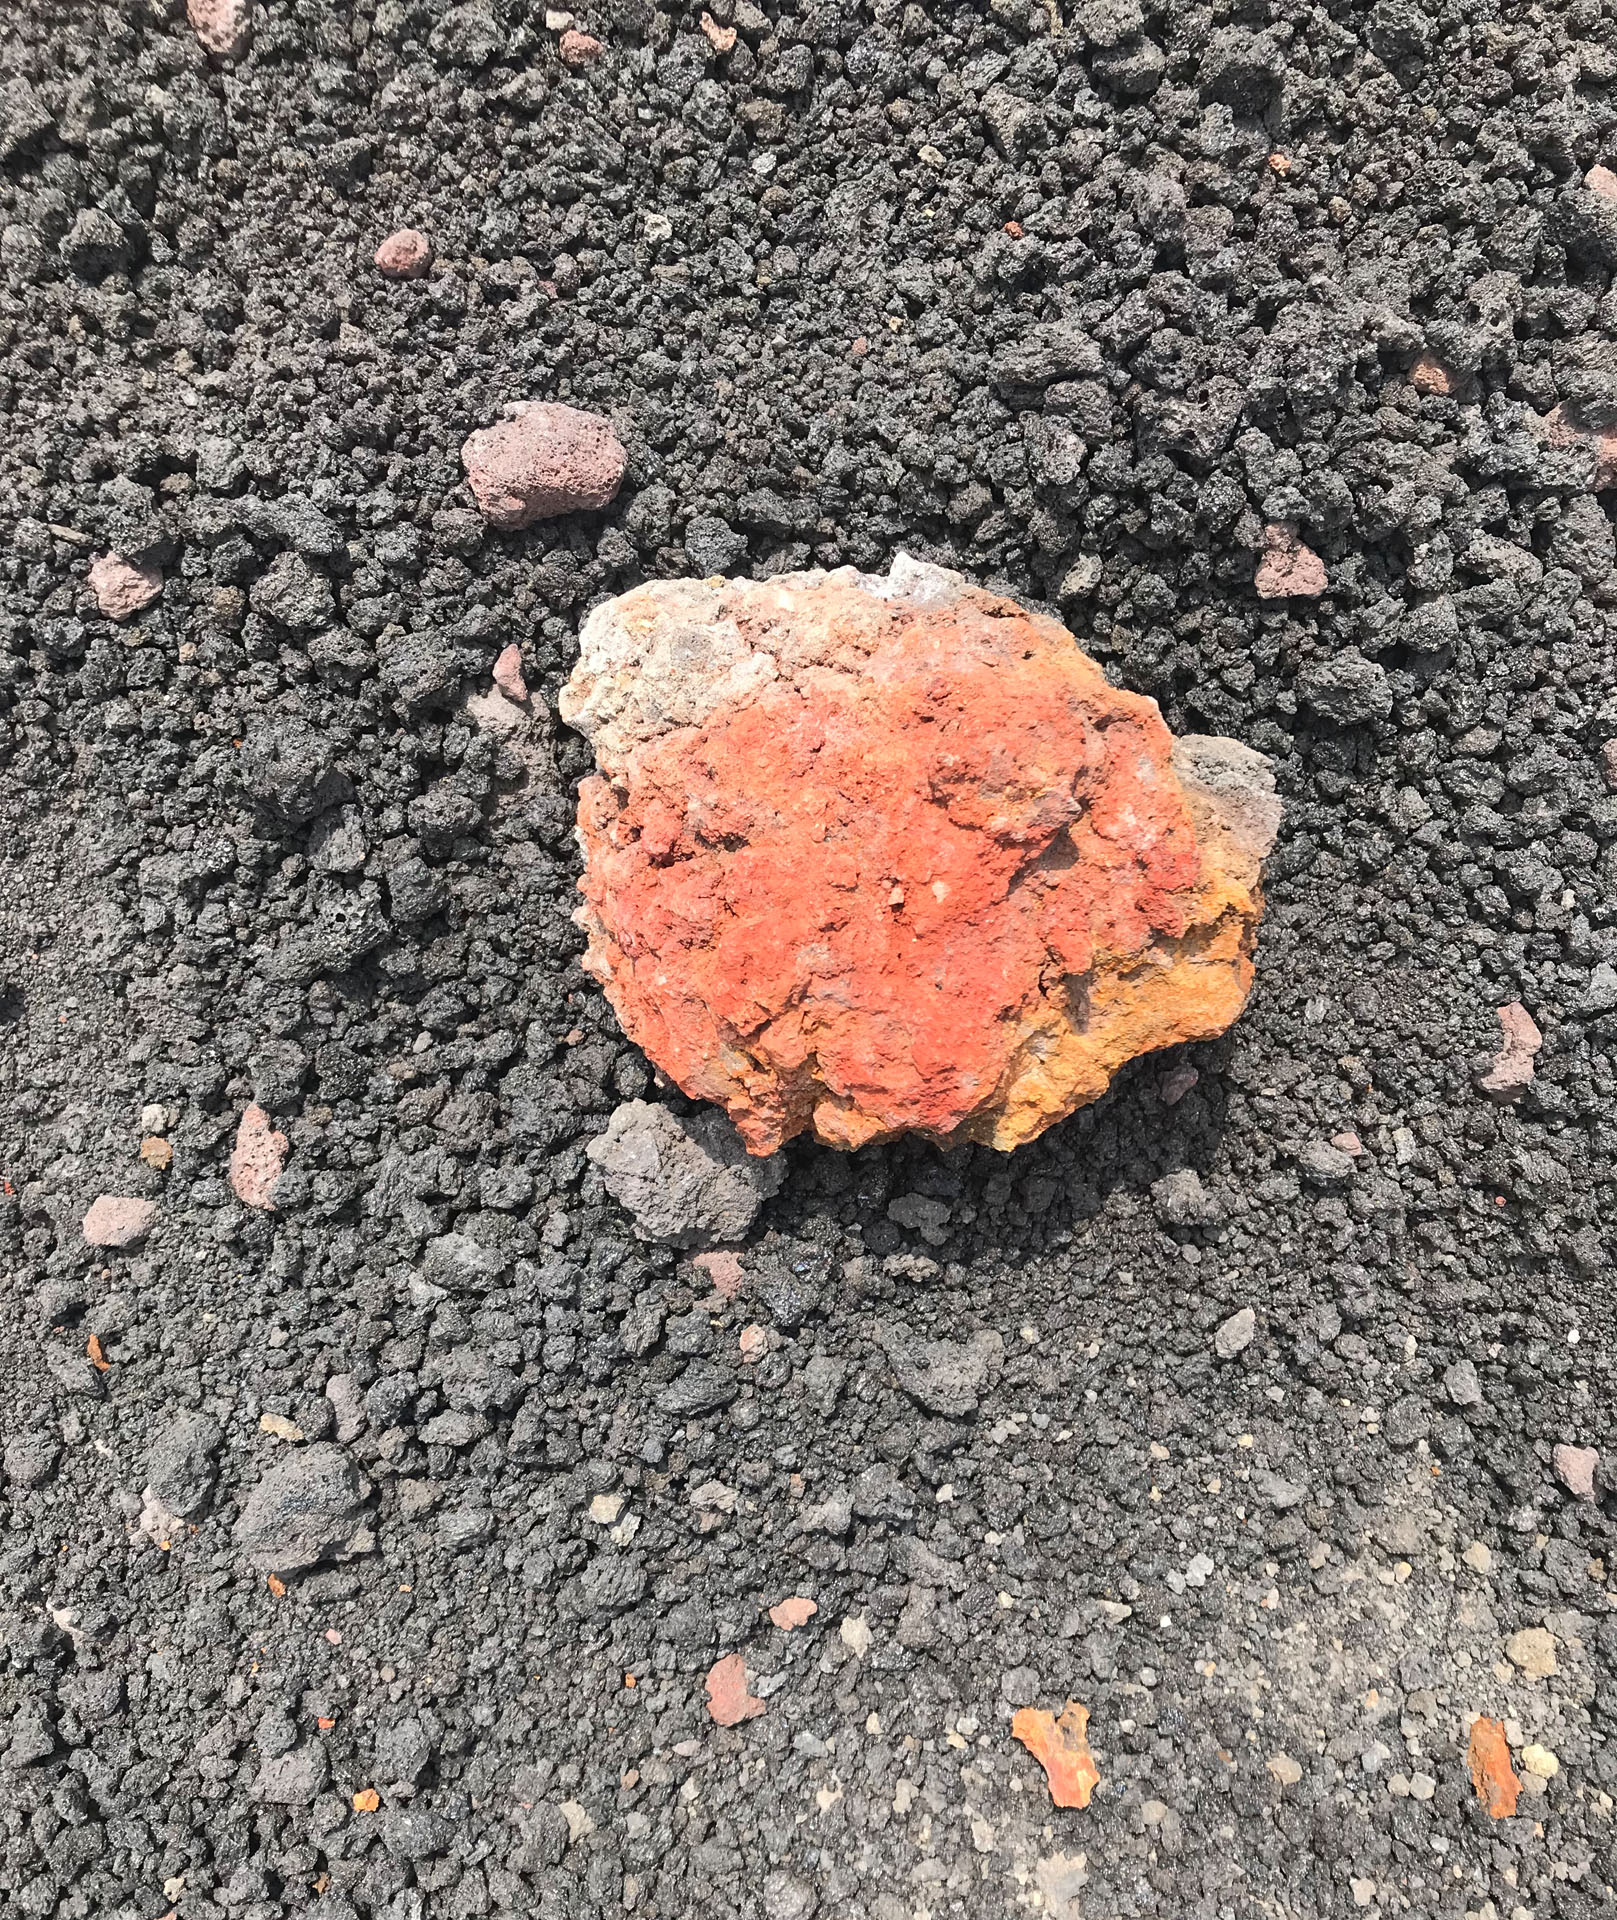 A rock-like form with a peach hue